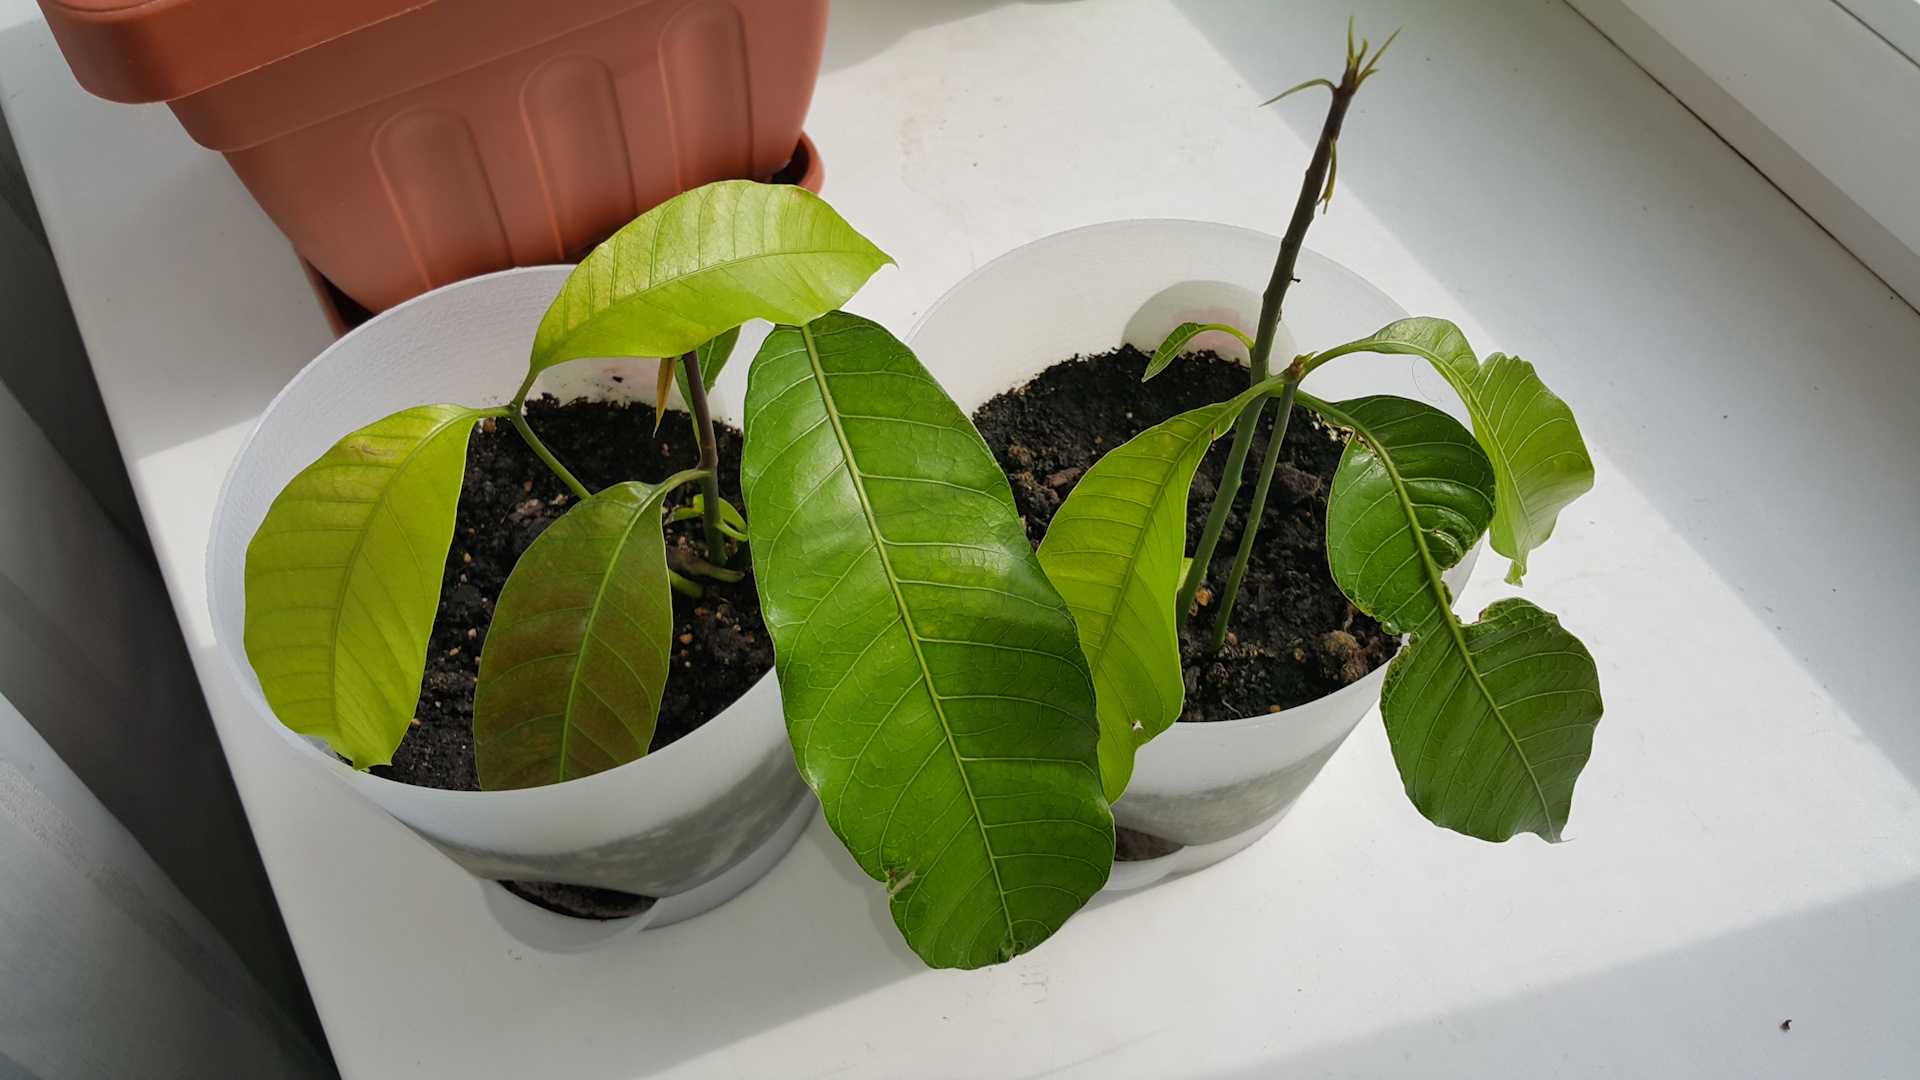 Как растет манго в домашних условиях: фото, можно ли получить из семечки, как правильно посадить в горшок и ухаживать, как цветет, почему скручиваются листья? selo.guru — интернет портал о сельском хозяйстве